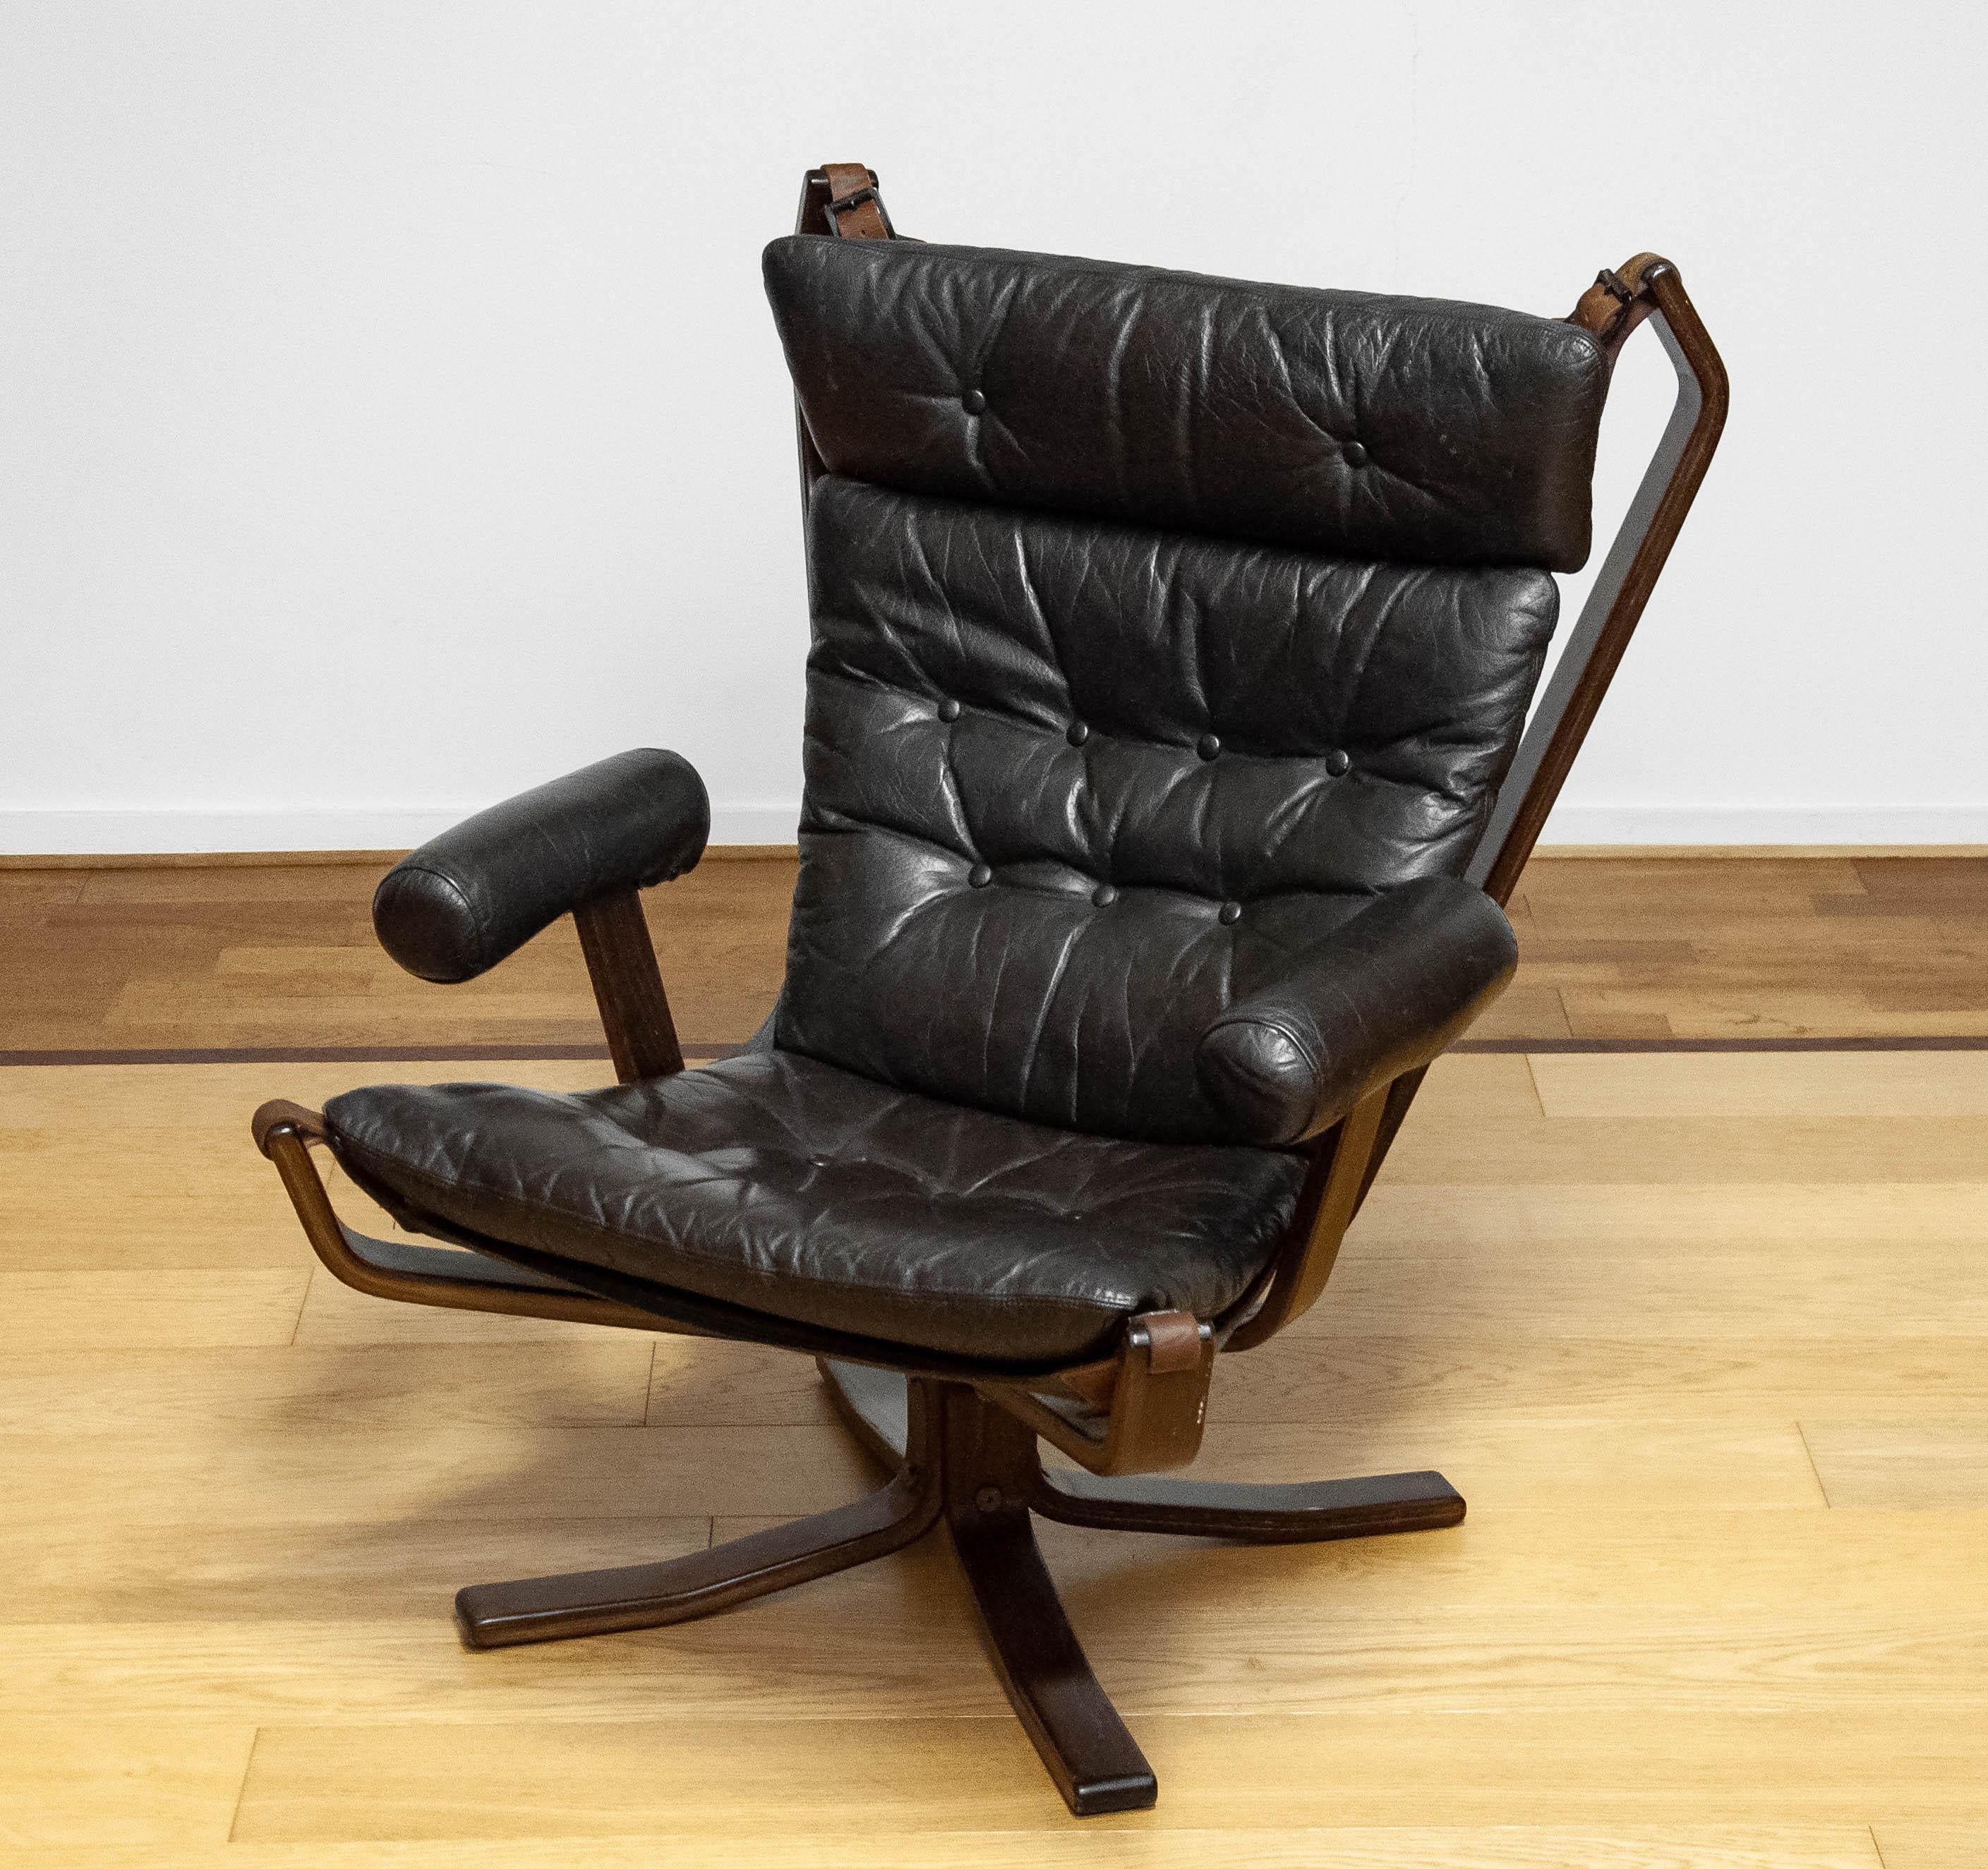 Scandinave moderne Chaise longue en cuir Brown des années 1970 